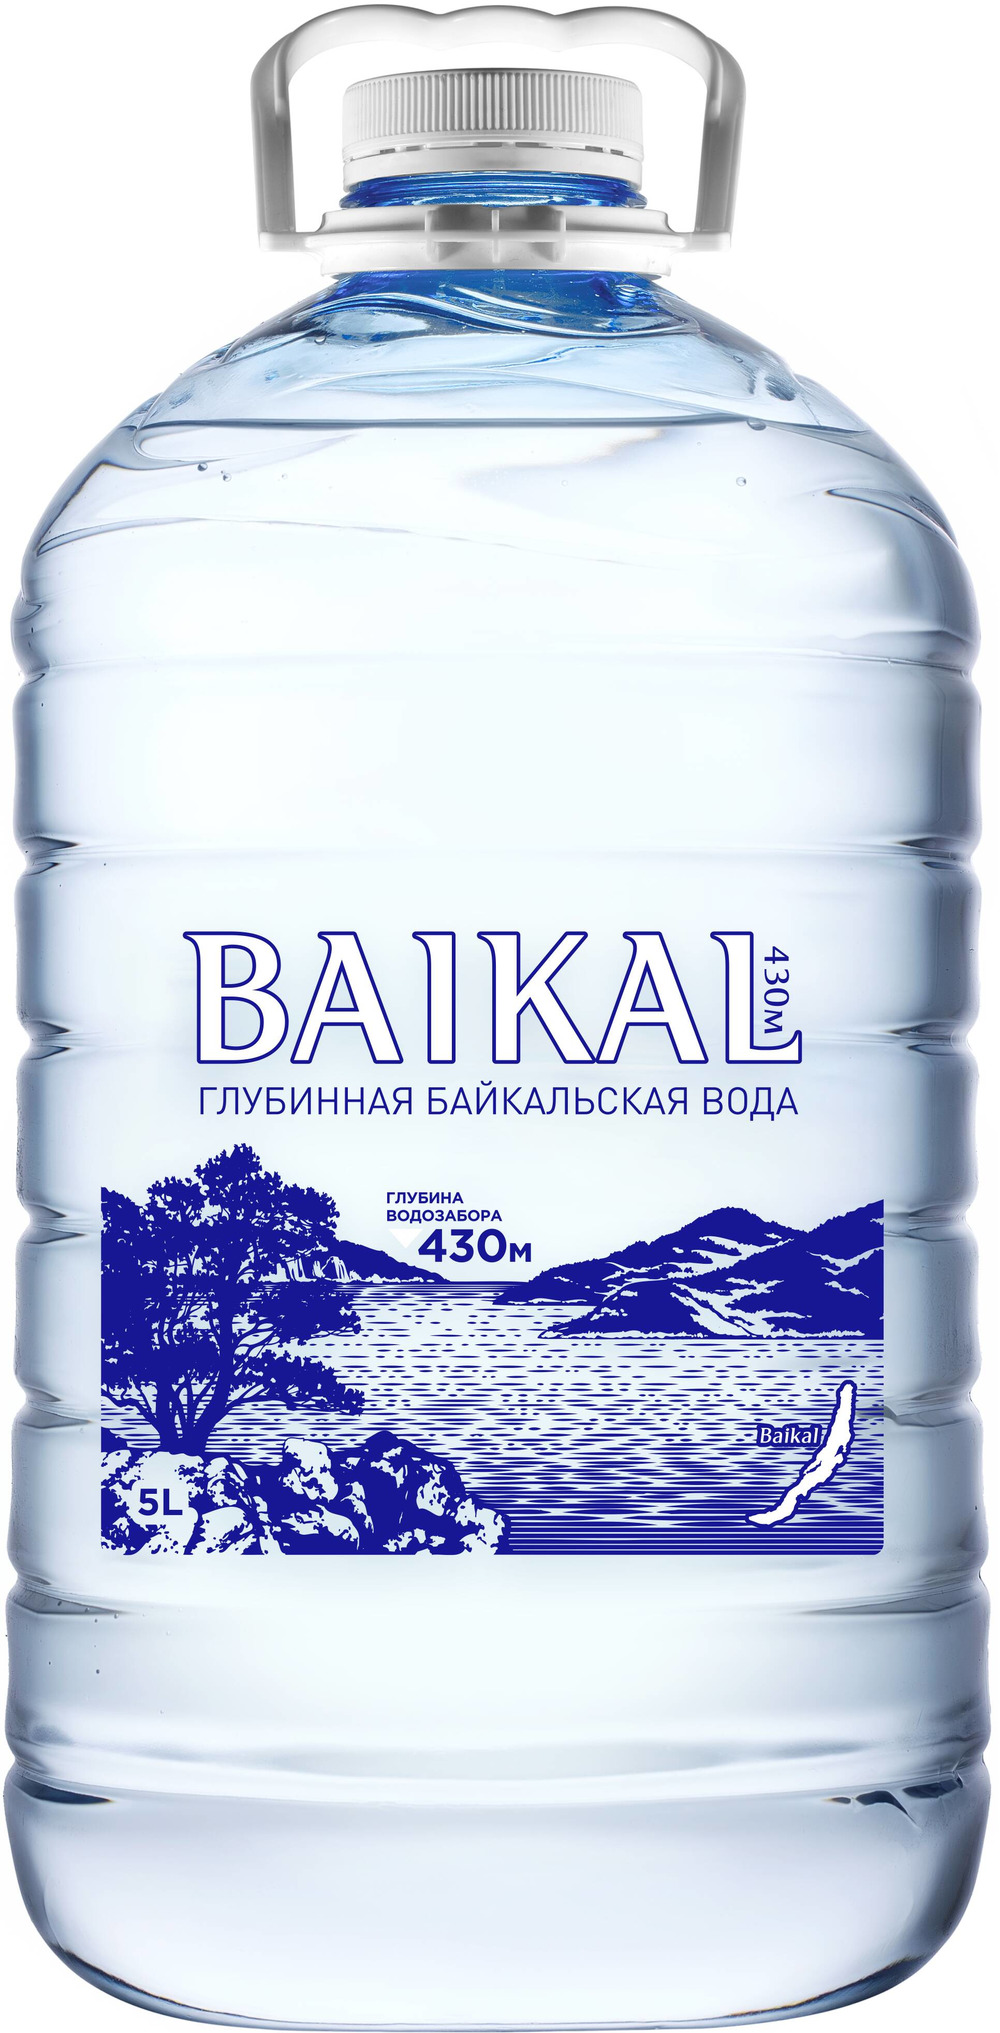 Вода байкал москва. Природная питьевая вода Байкальская глубинная baikal430 ПЭТ. Baikal 430 вода. Baikal вода 1.5л 430м. Байкальская глубинная вода Байкал 430.